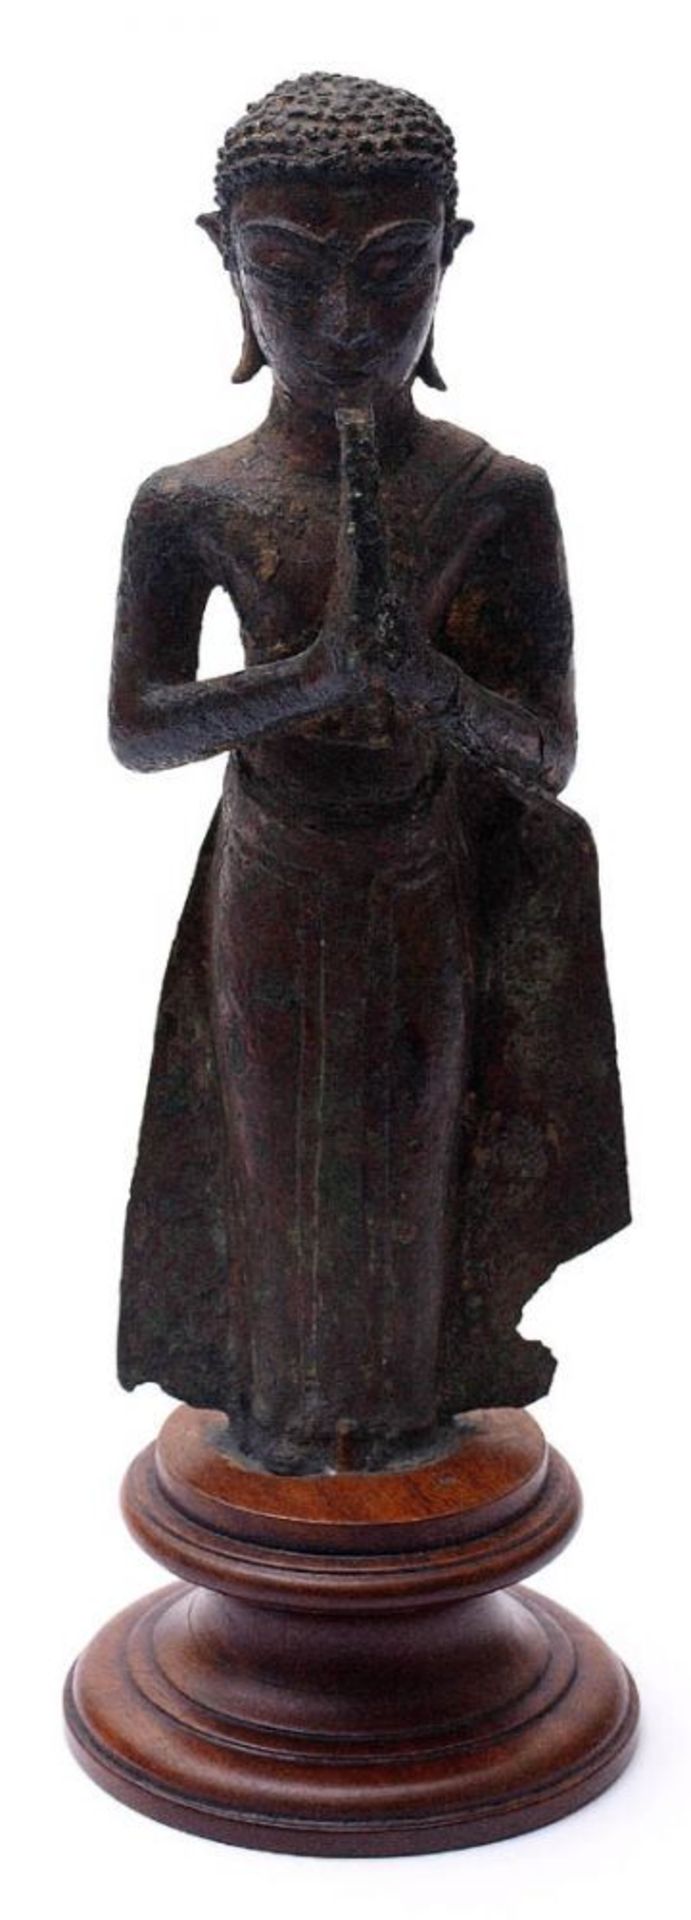 Buddhafigur, Burma, wohl 18./19.Jhdt. Stehend, die Hände zum Gebet gefaltet. Bodenfund. Bronze mit